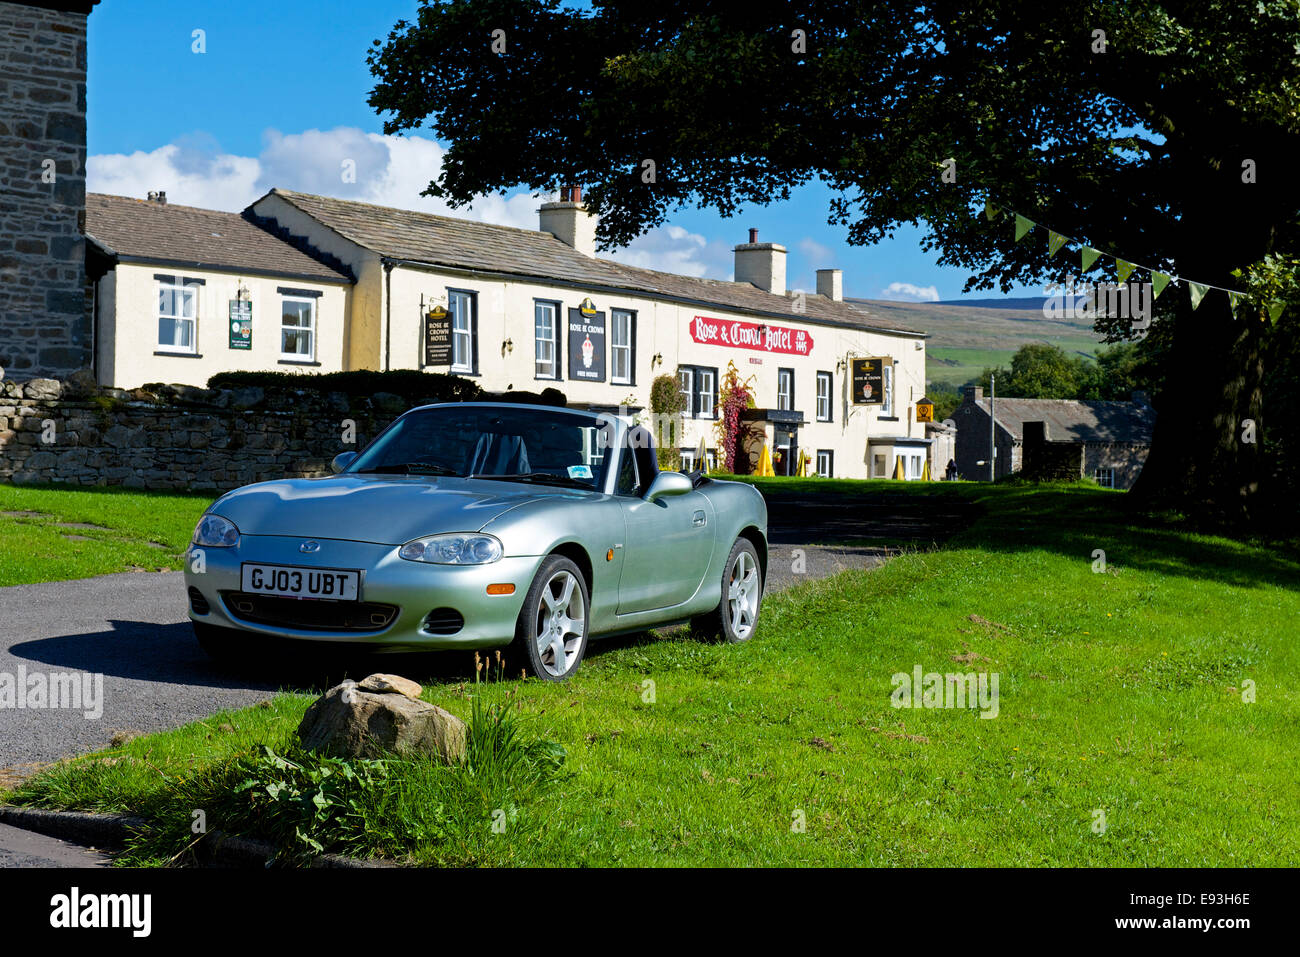 Voiture de sport Mazda garée près de la Rose & Crown pub, dans le village de Bainbridge, Wensleydale, Yorkshire, Angleterre Parc Nat Banque D'Images